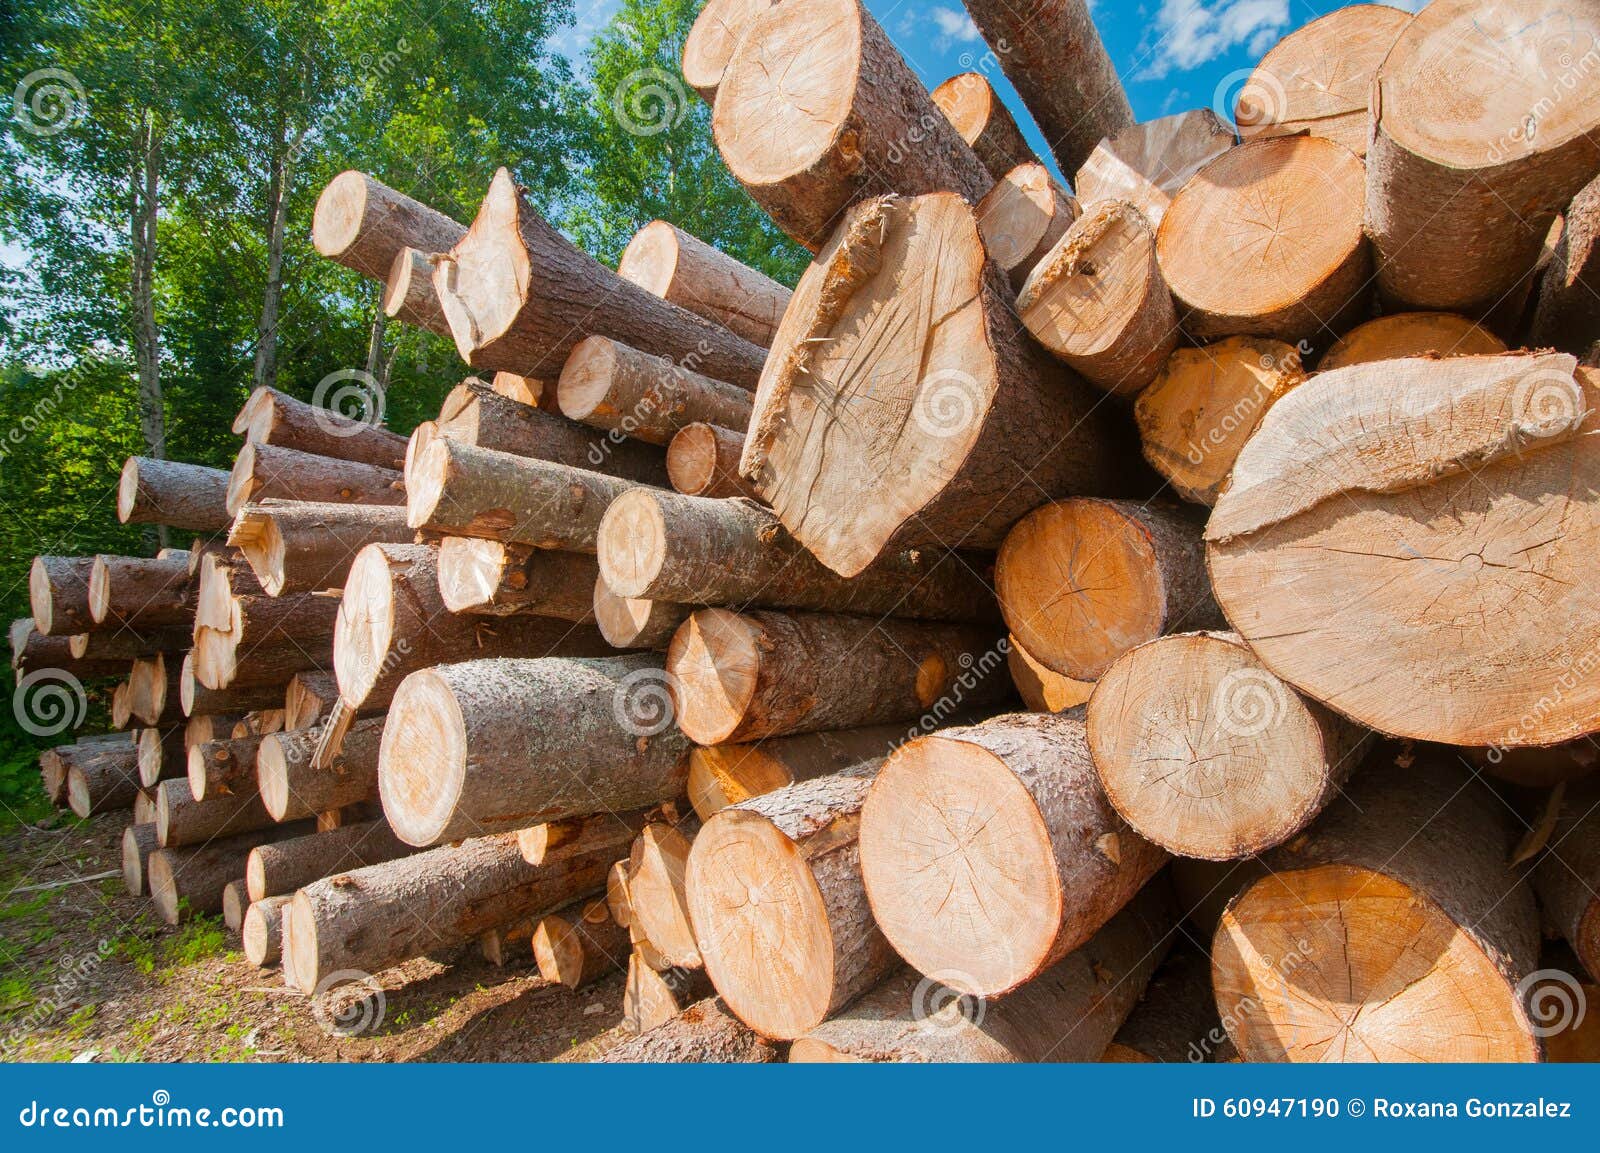 logs at lumber mill